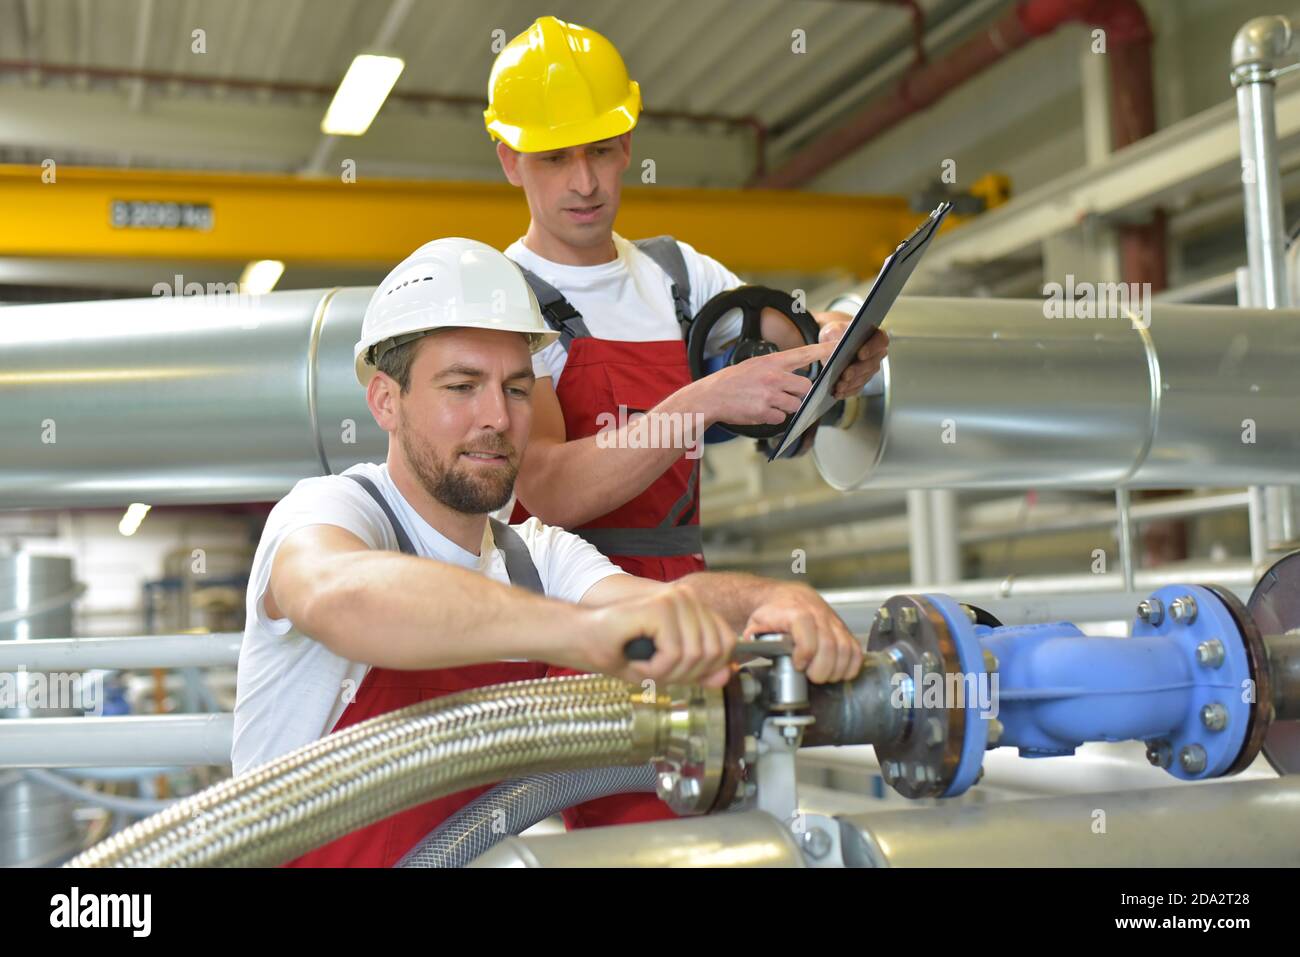 Mechanik reparieren einer Maschine in einem modernen Industriebetrieb - Beruf und Teamarbeit - Porträt Gruppe Arbeiter Stockfoto